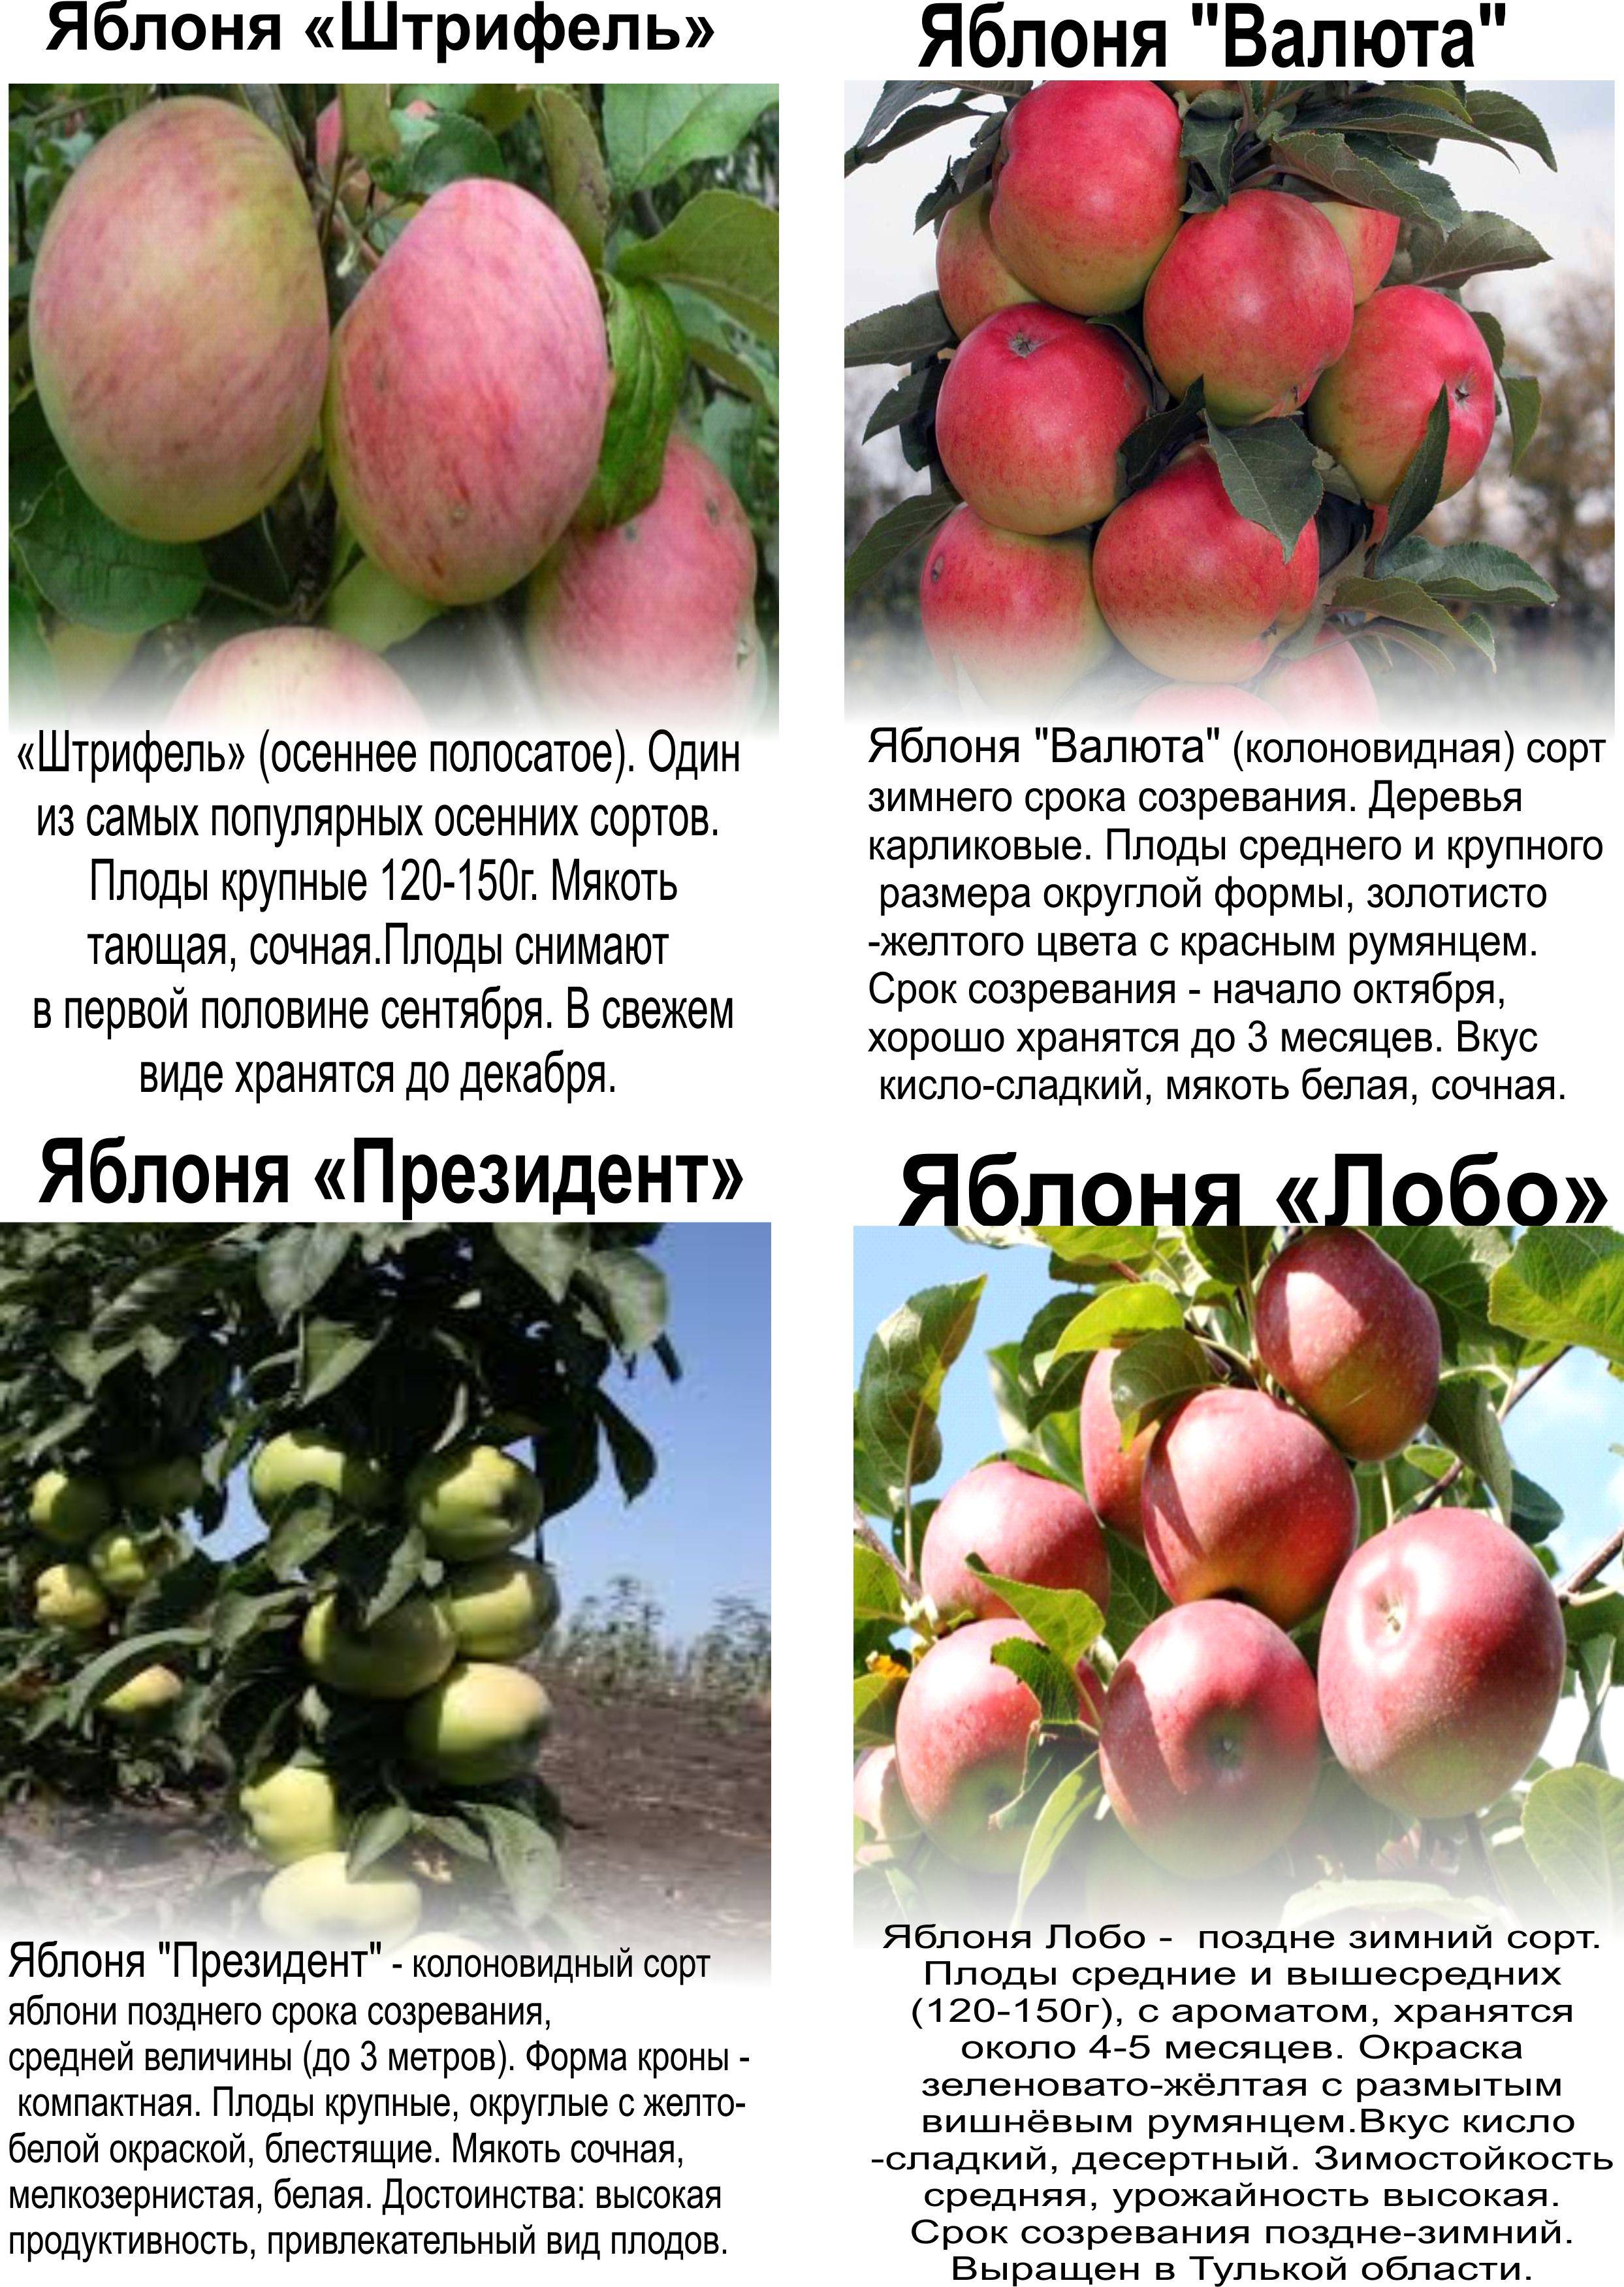 Описание сорта яблони поэзия: фото яблок, важные характеристики, урожайность с дерева